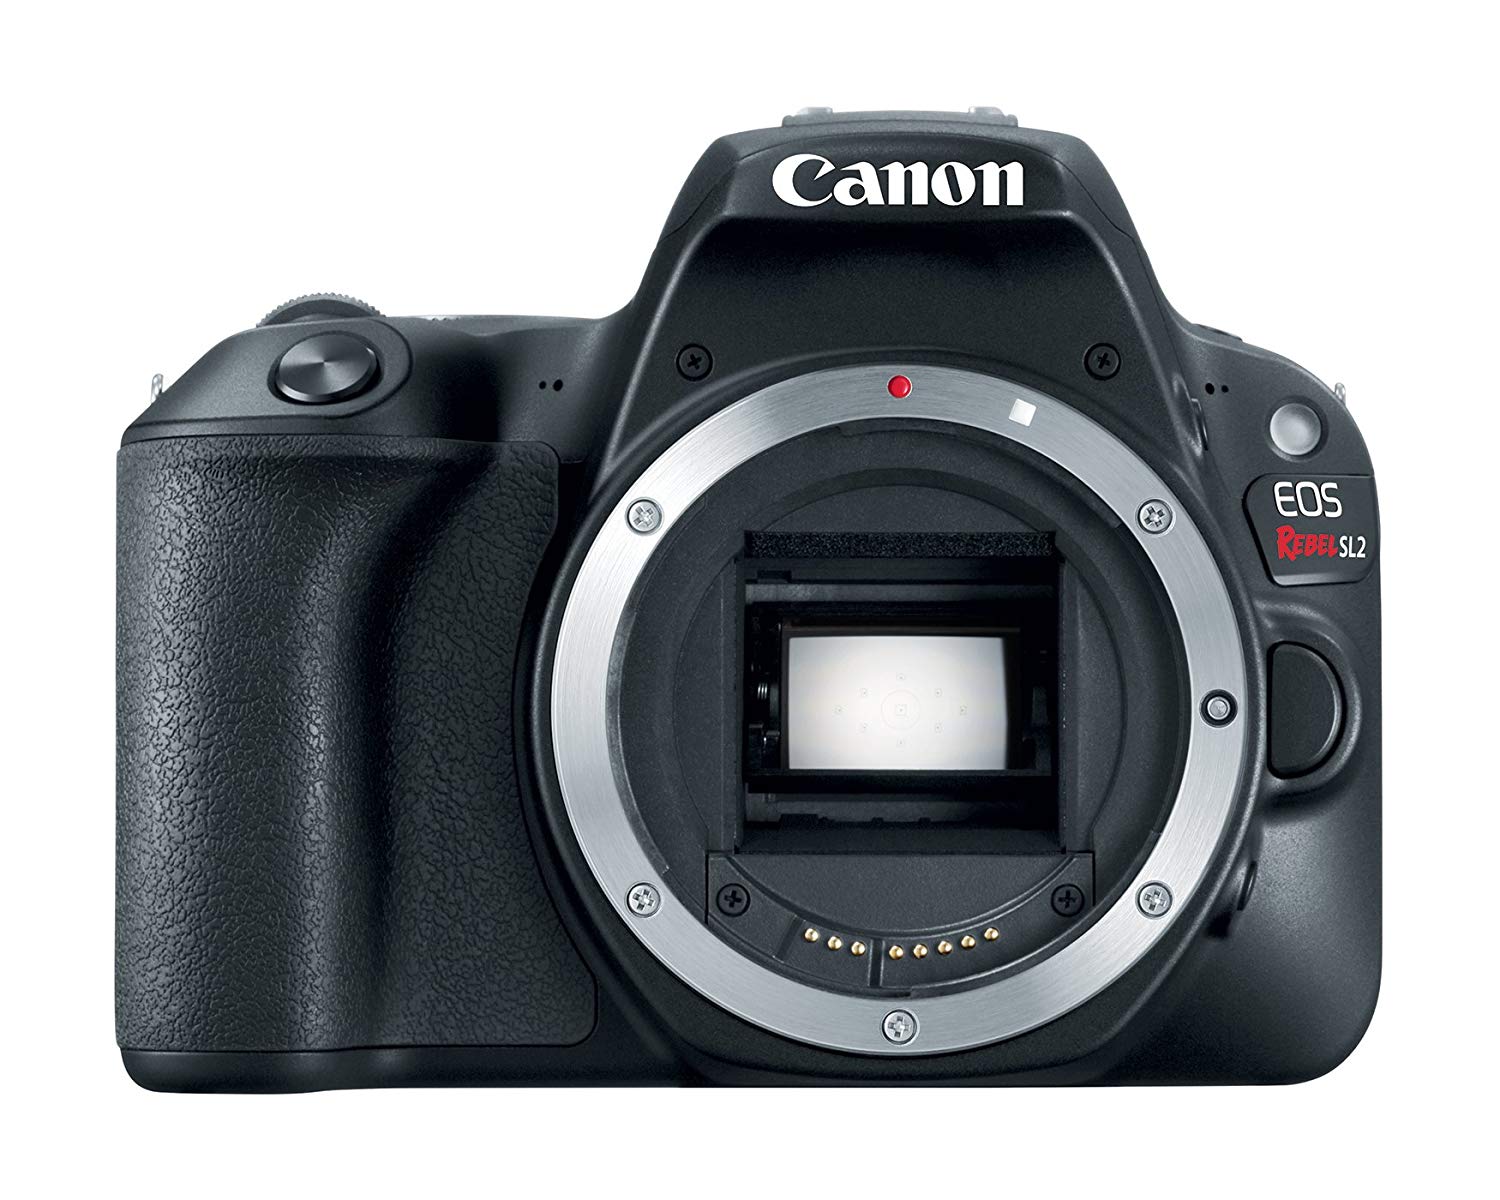 Canon EOS Rebel SL2 Digital SLR Camera Body - WiFi Enab...